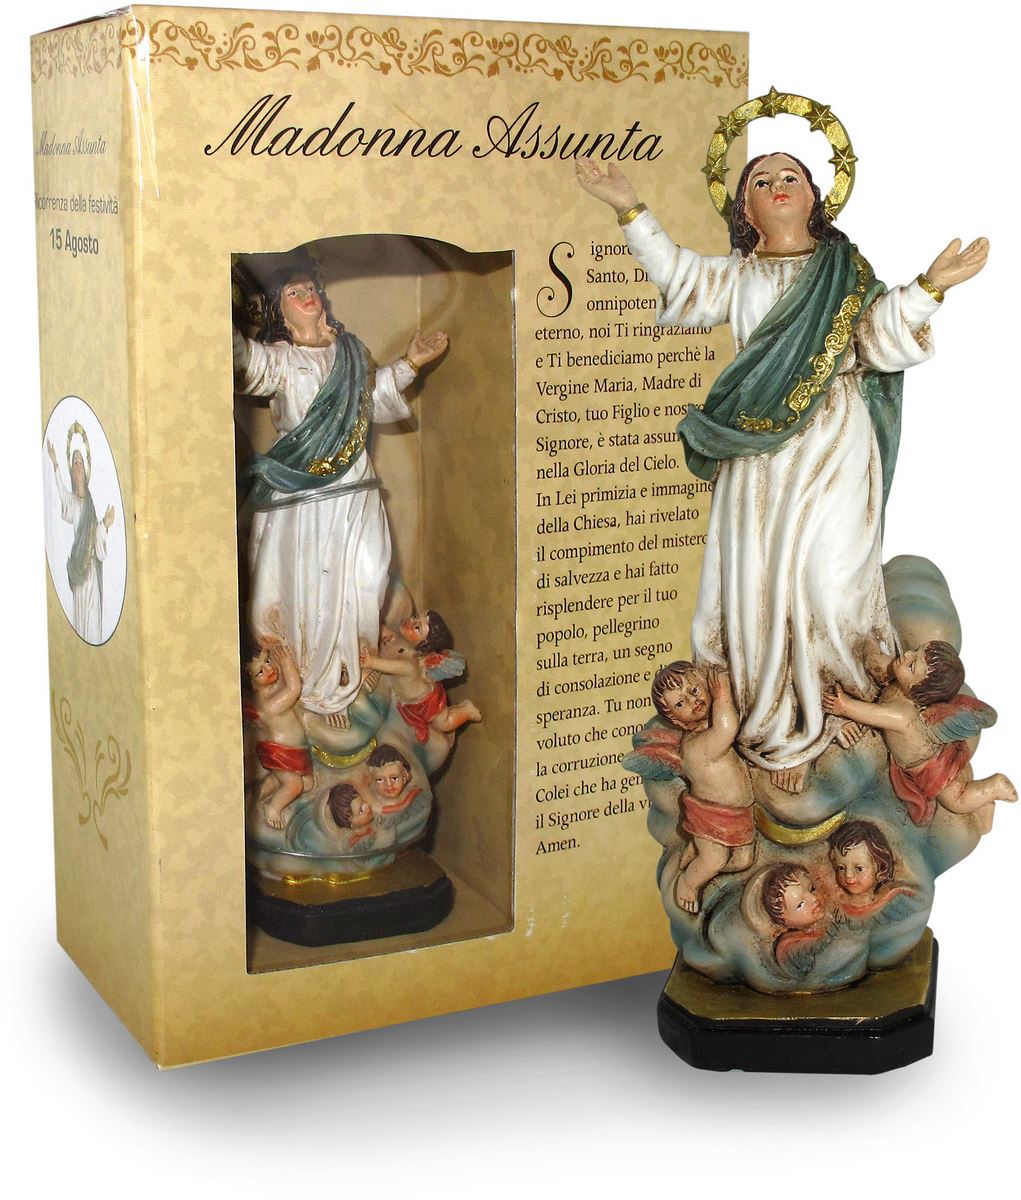 ferrari & arrighetti statua della madonna assunta in cielo da 12 cm in confezione regalo con segnalibro, statuetta personaggio religioso con scatola regalo decorativa, testi in it